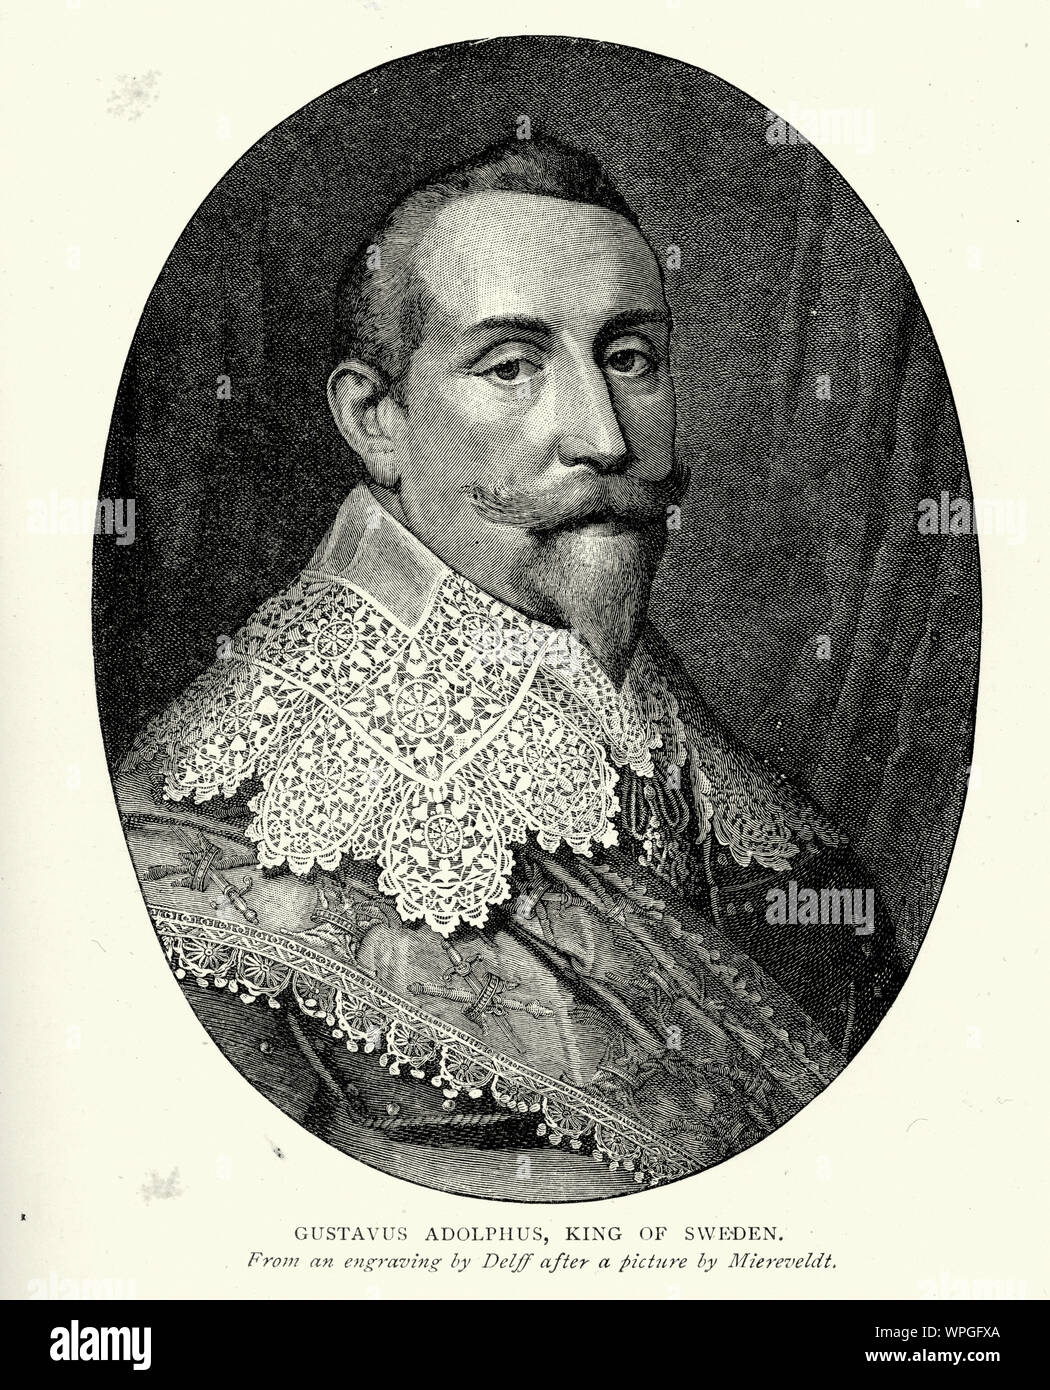 Gustavus Adolphus (9/19 Dezember 1594 - 6/16 November 1632, O.S./N.S.), in englischer Sprache auch bekannt als Gustav II Adolf oder Gustav II Adolph, war der König von Schweden von 1611 bis 1632, und ist für die Gründung von Schweden als Großmacht gutgeschrieben Stockfoto